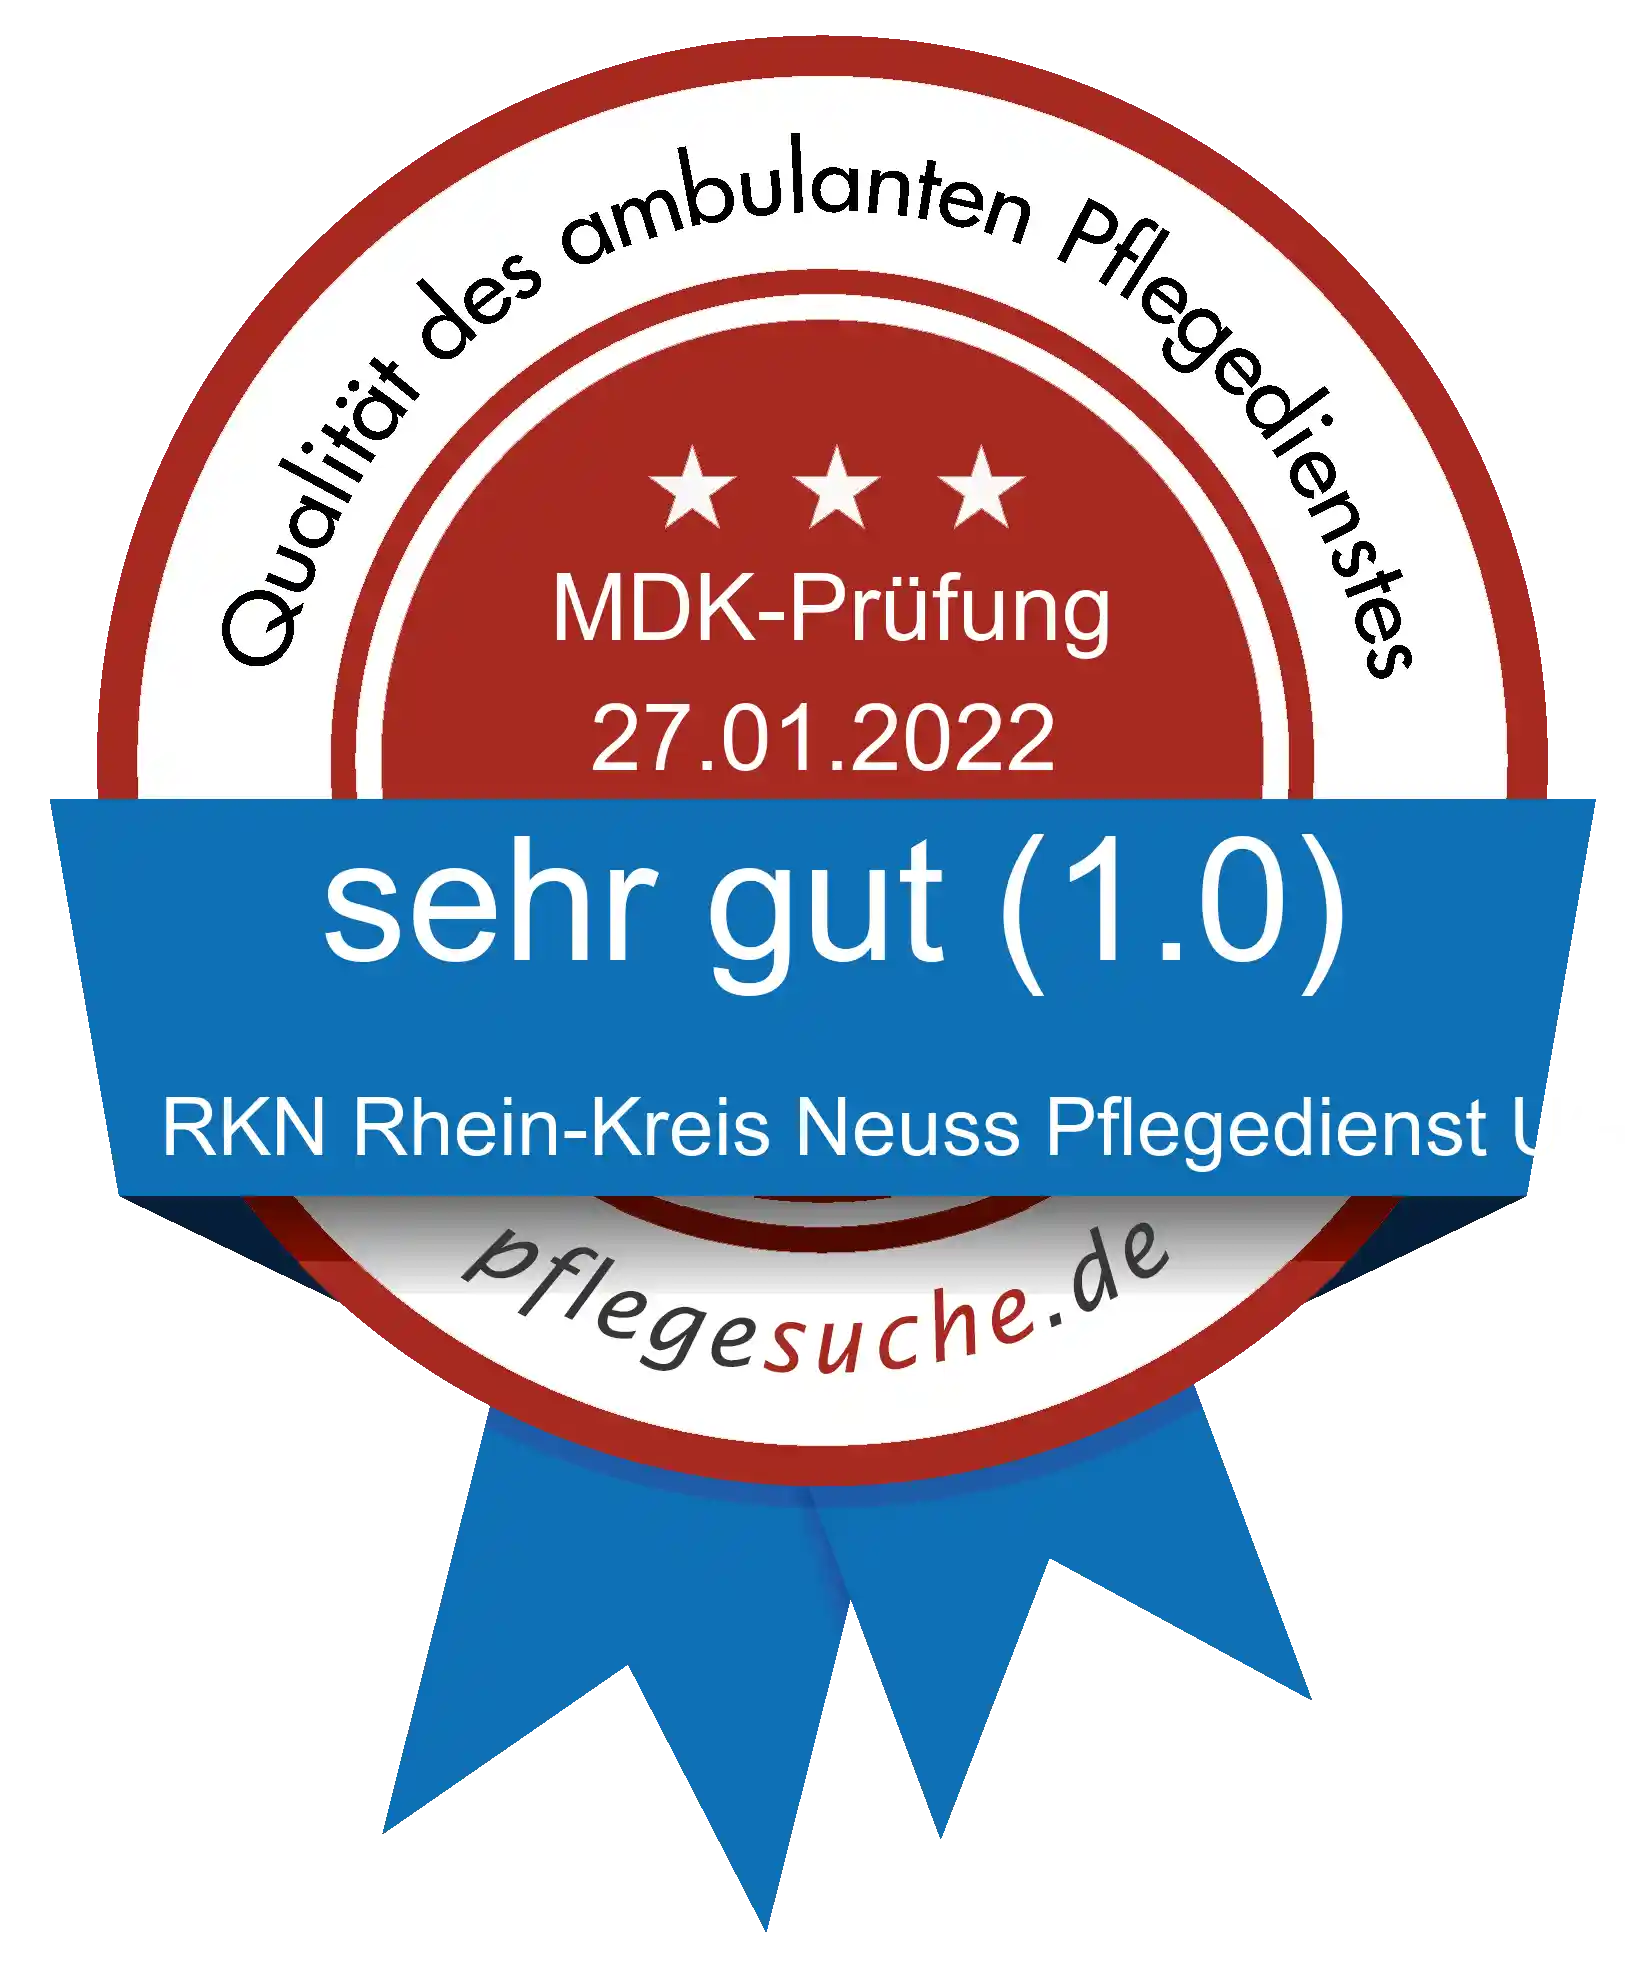 Siegel Benotung: RKN Rhein-Kreis Neuss Pflegedienst UG